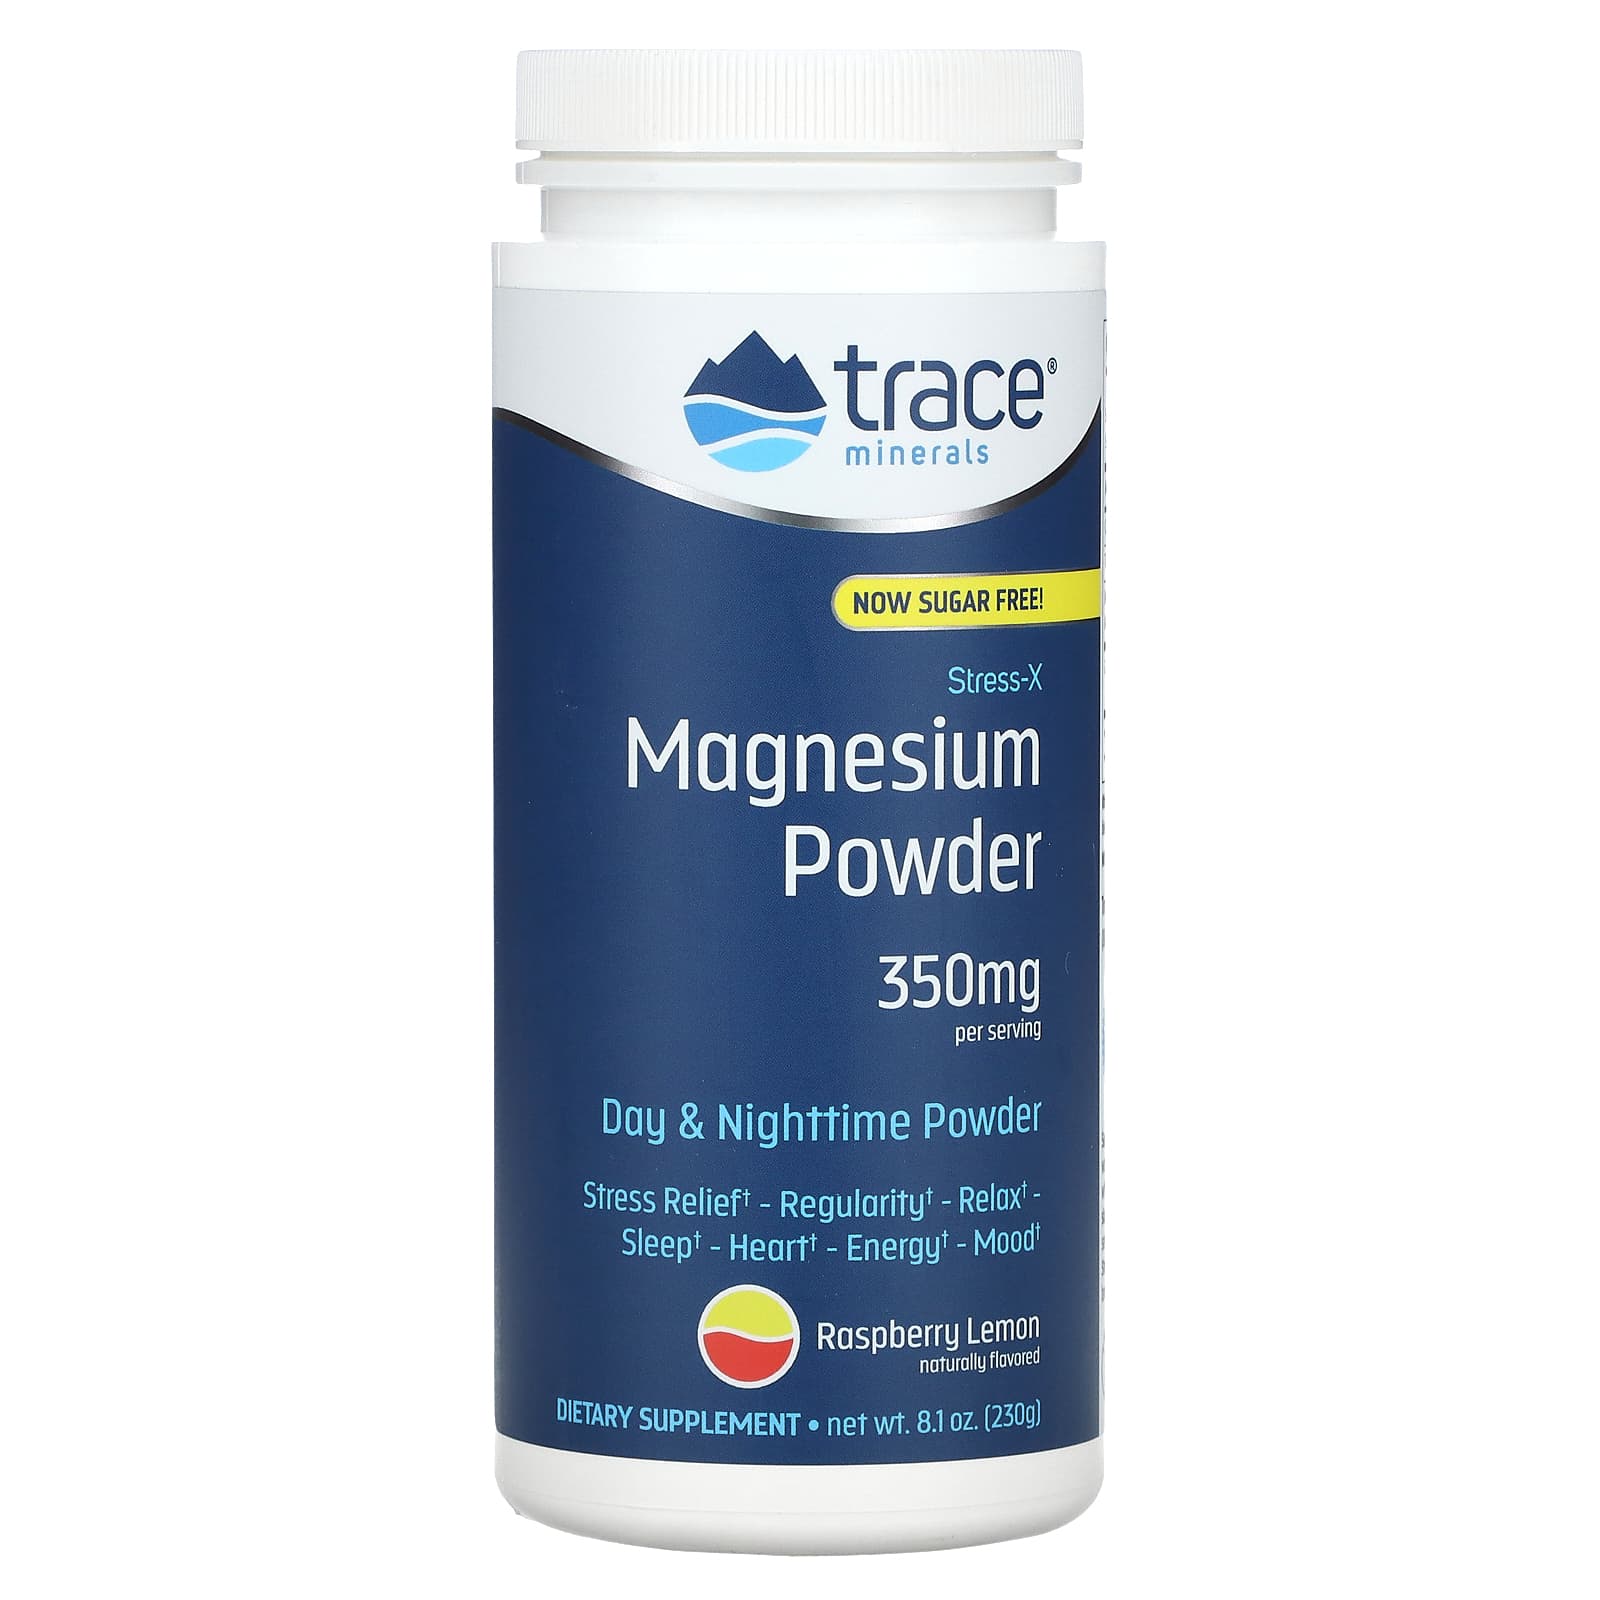  NOW - Citrato de magnesio en polvo, 8 onzas (paquete de 2) :  Salud y Hogar